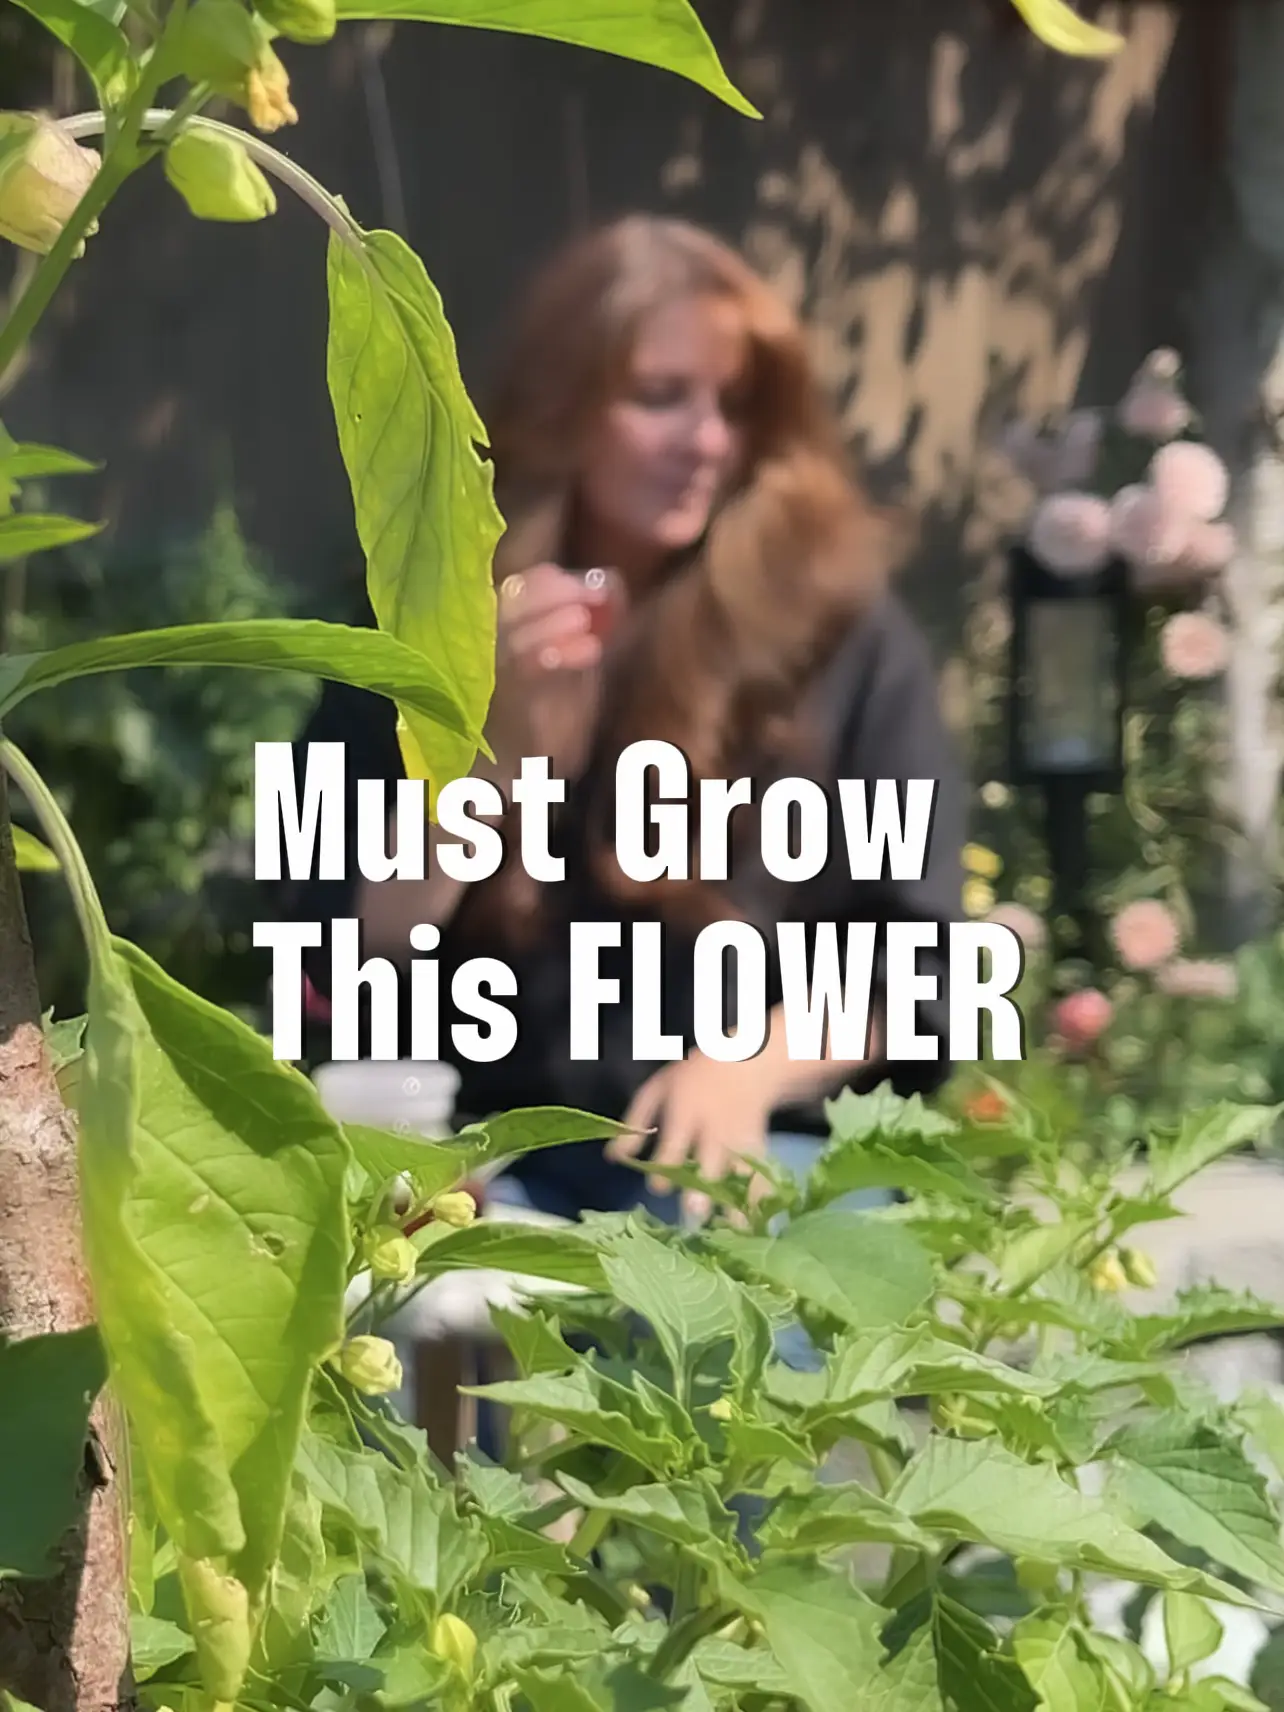 How to Plant an Herb Garden - Danielle Moss